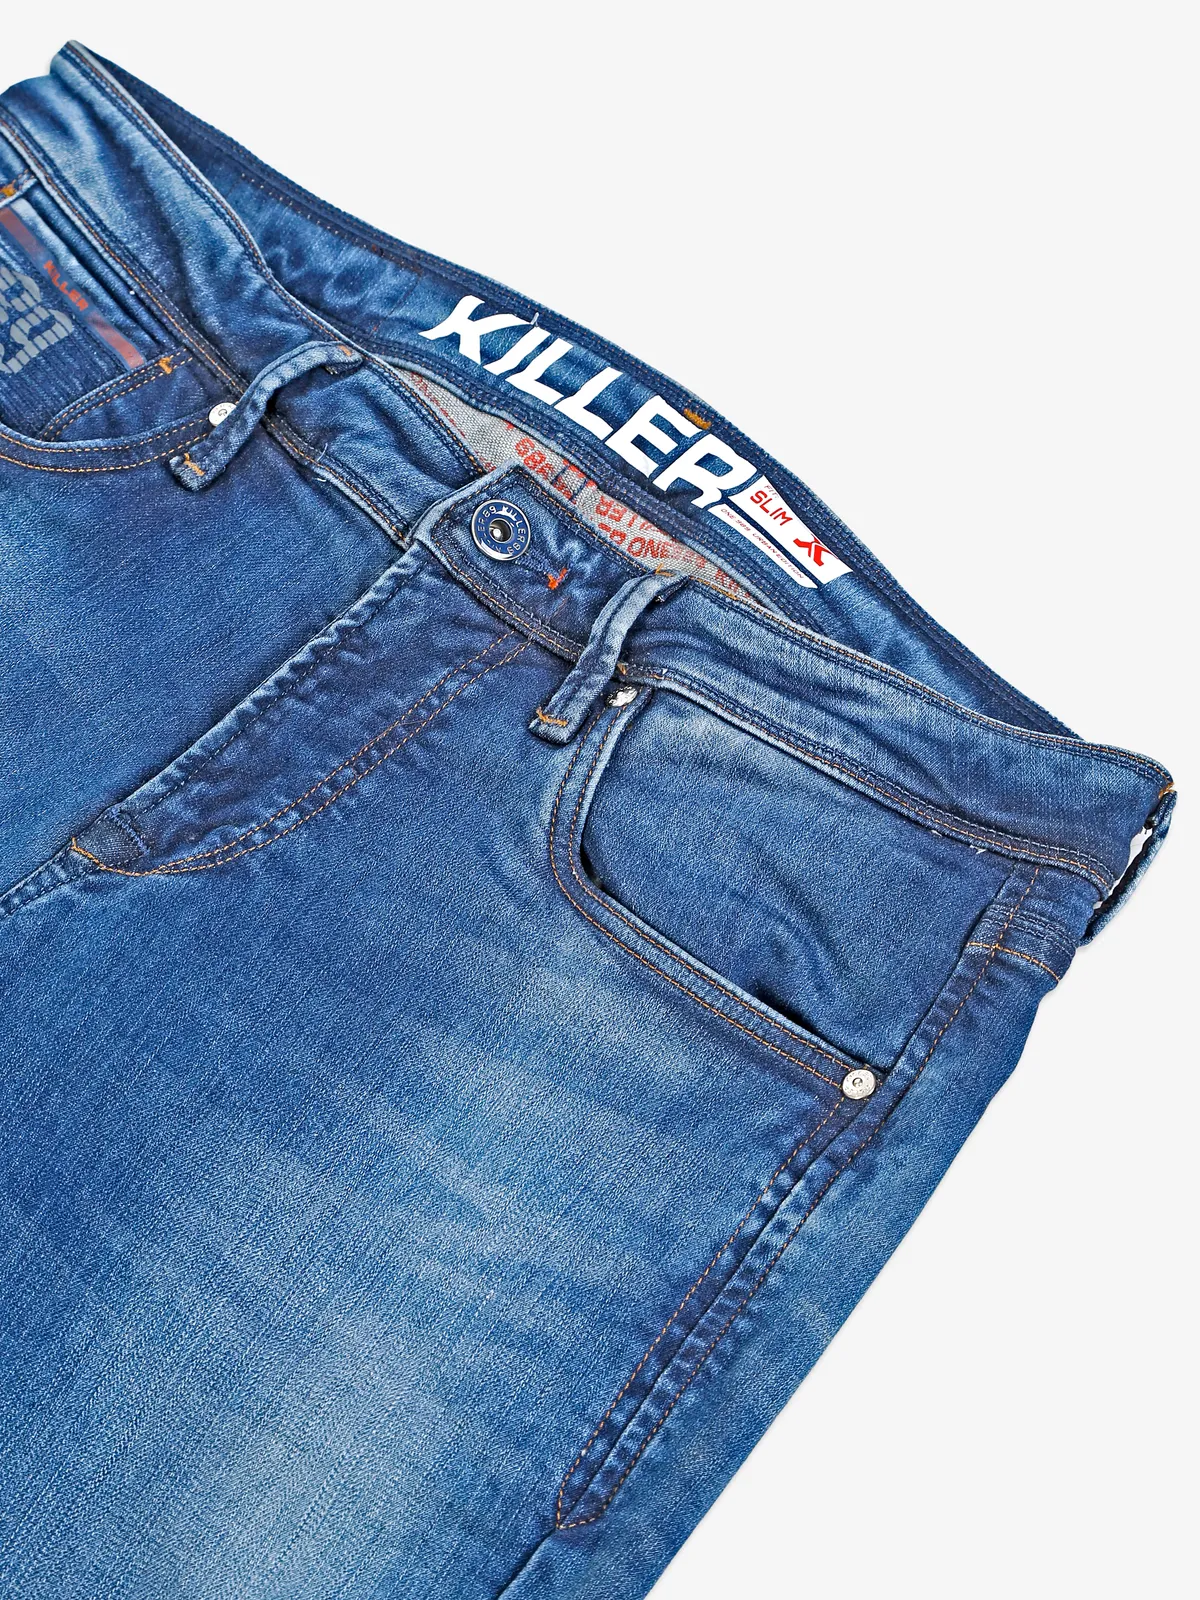 Killer light blue washed slim fit jeans